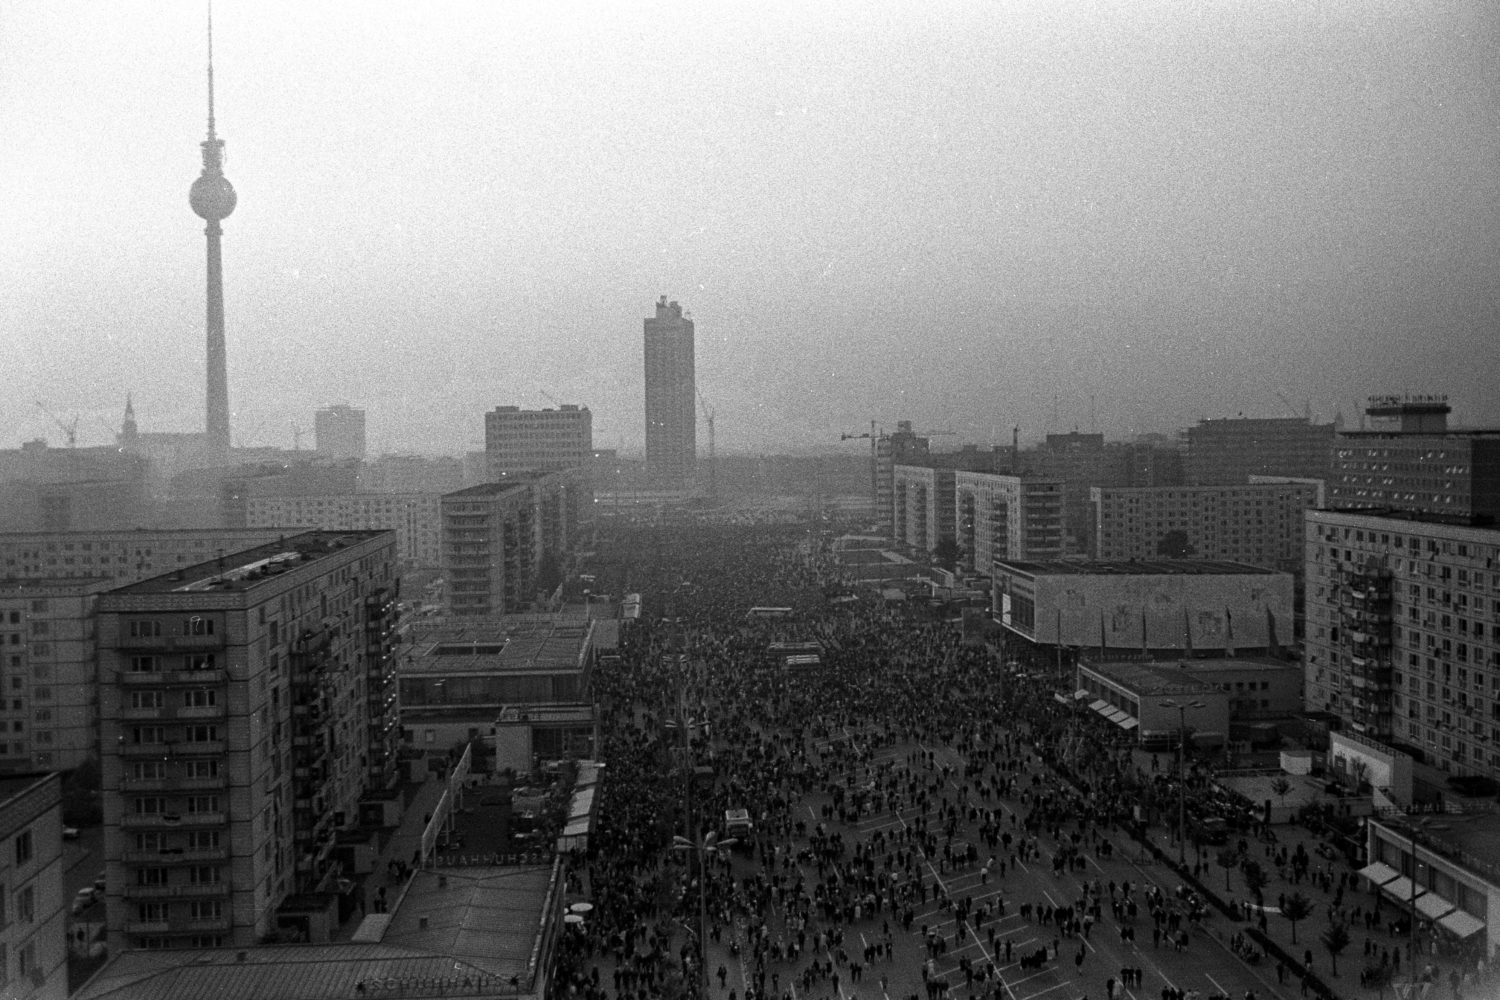 Festumzug auf der Karl Marx Allee, während der Feierlichkeiten anlässlich des 20. Jahrestages der DDR in Ost-Berlin, Aufnahme von 1969. 